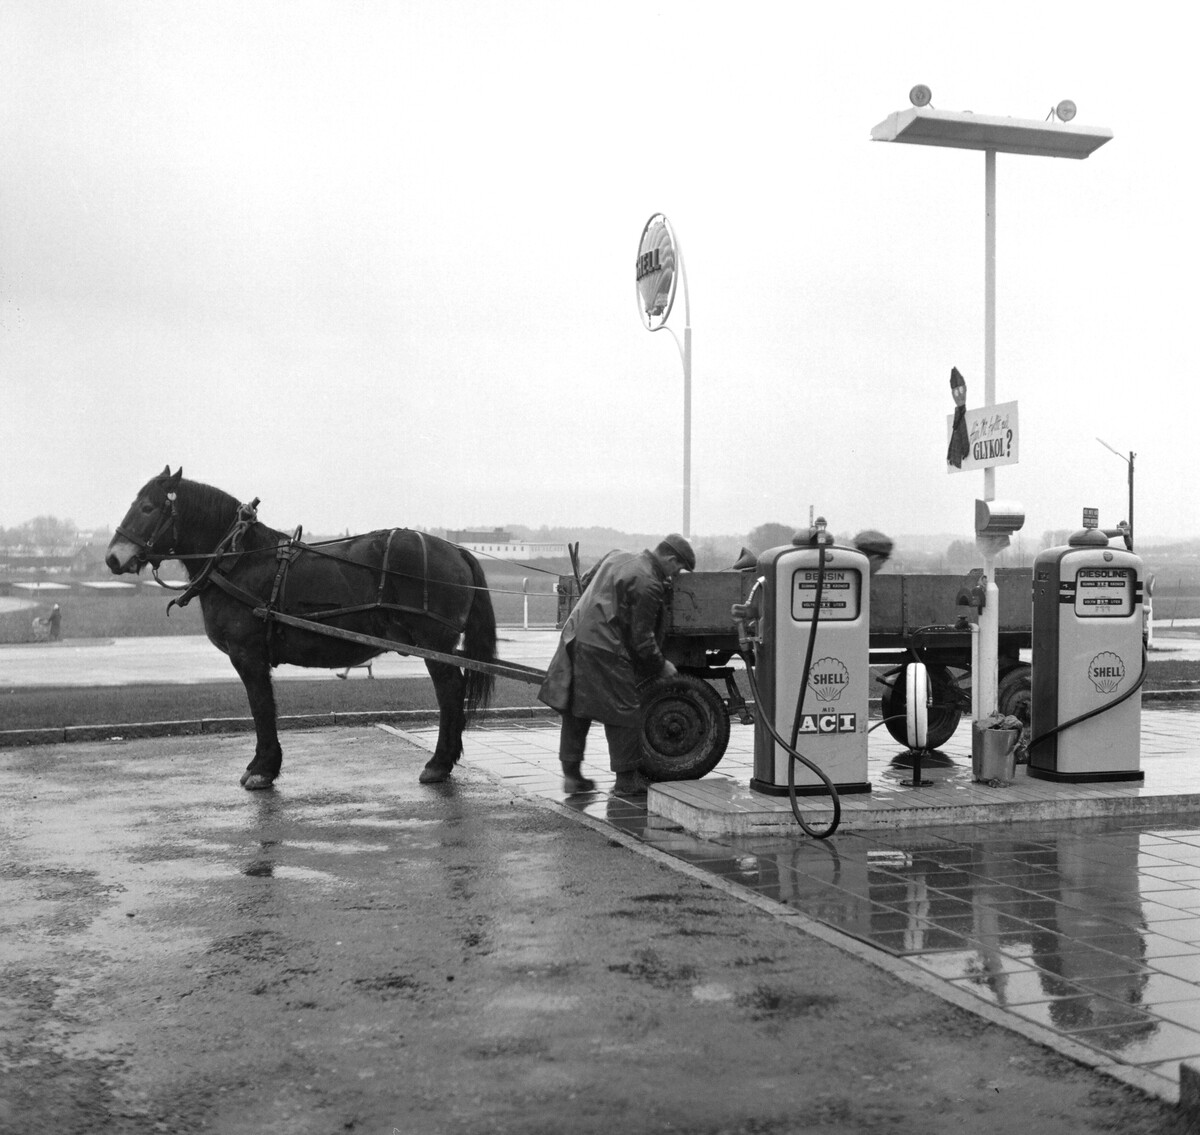 Фермер с лошадью на заправочной станции в Швеции, 1960. Фотограф Рольф Олсон